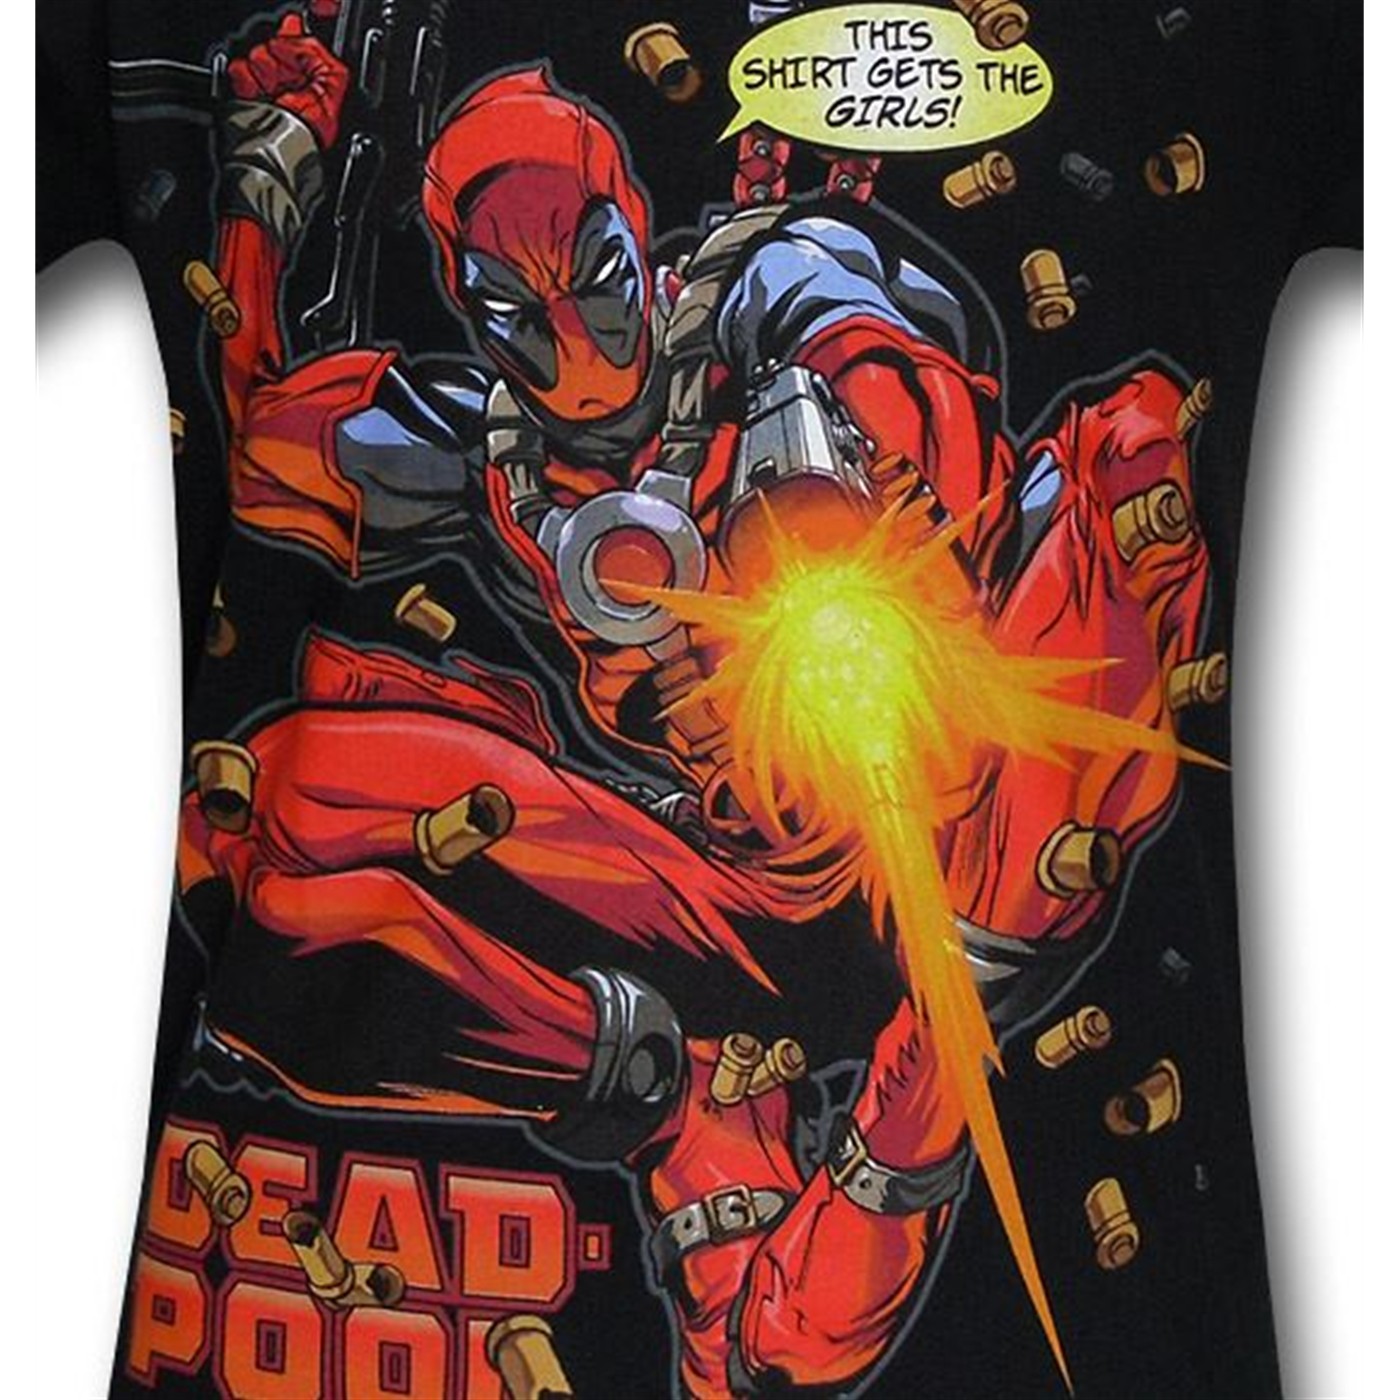 Deadpool Gets The Girls T-Shirt